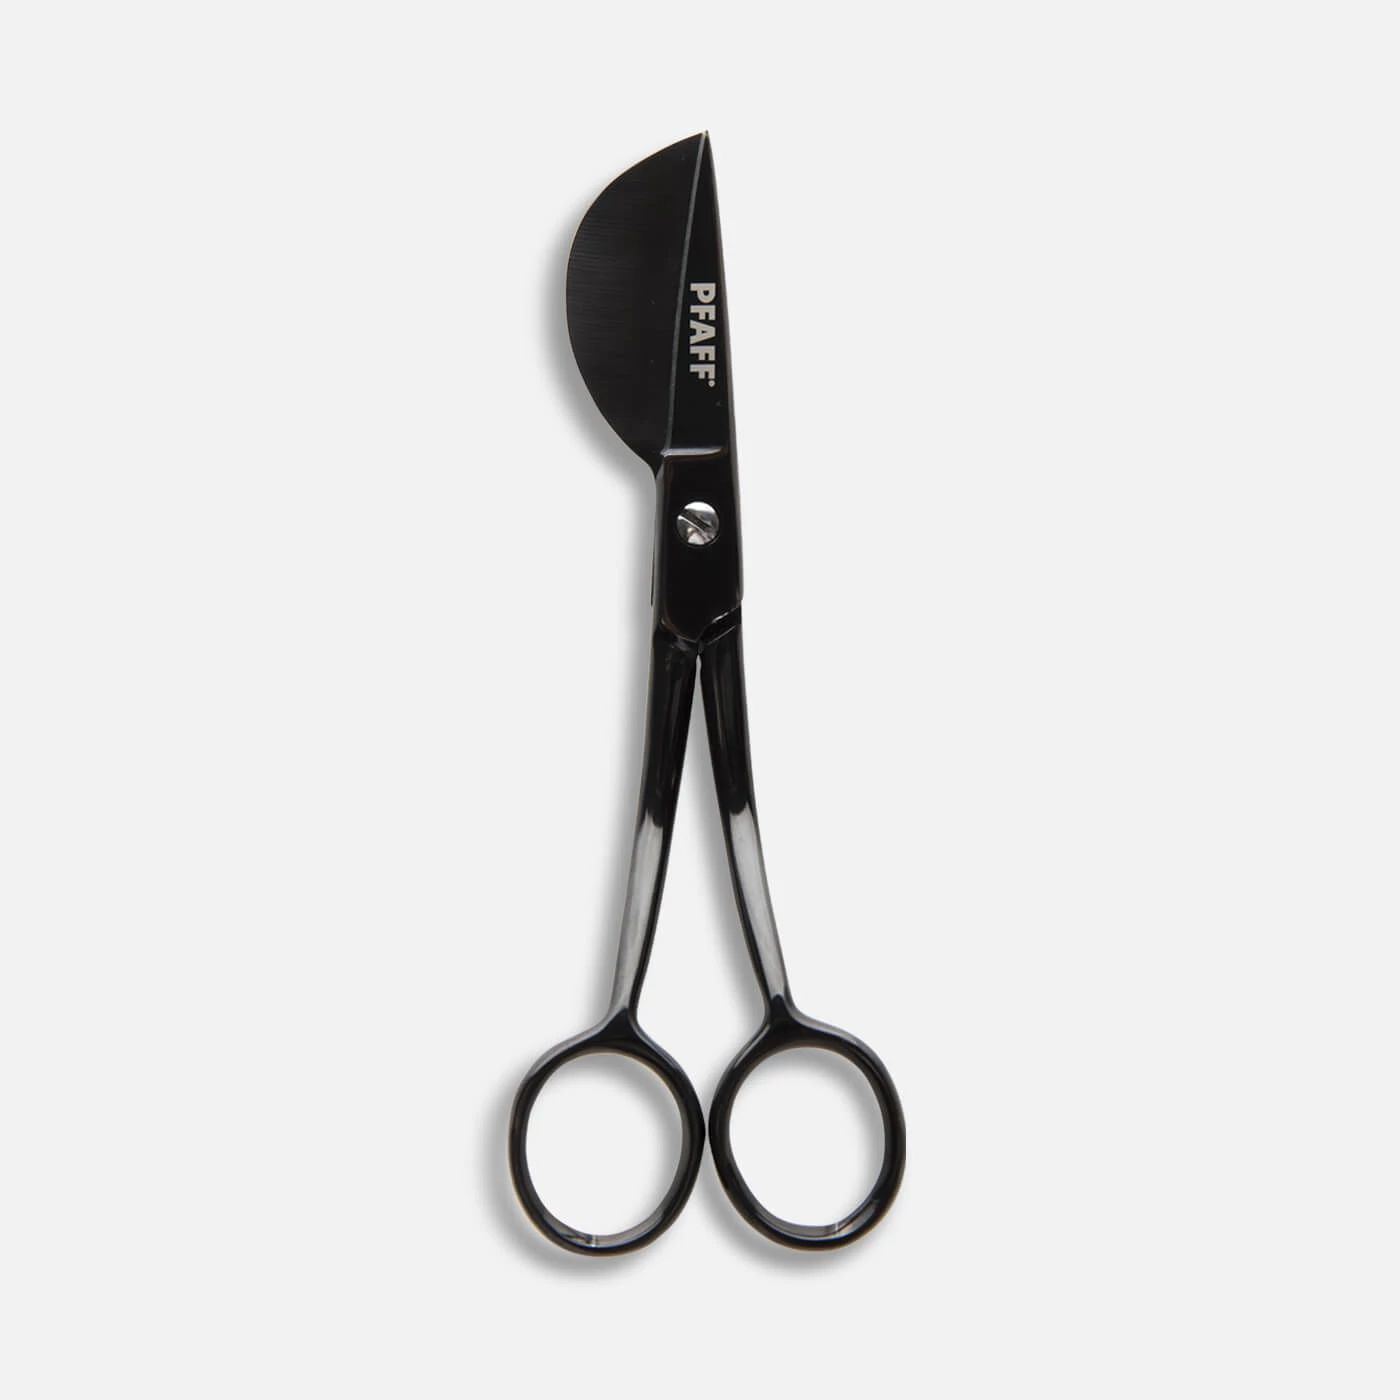 Applique Scissors – Scissor Sales